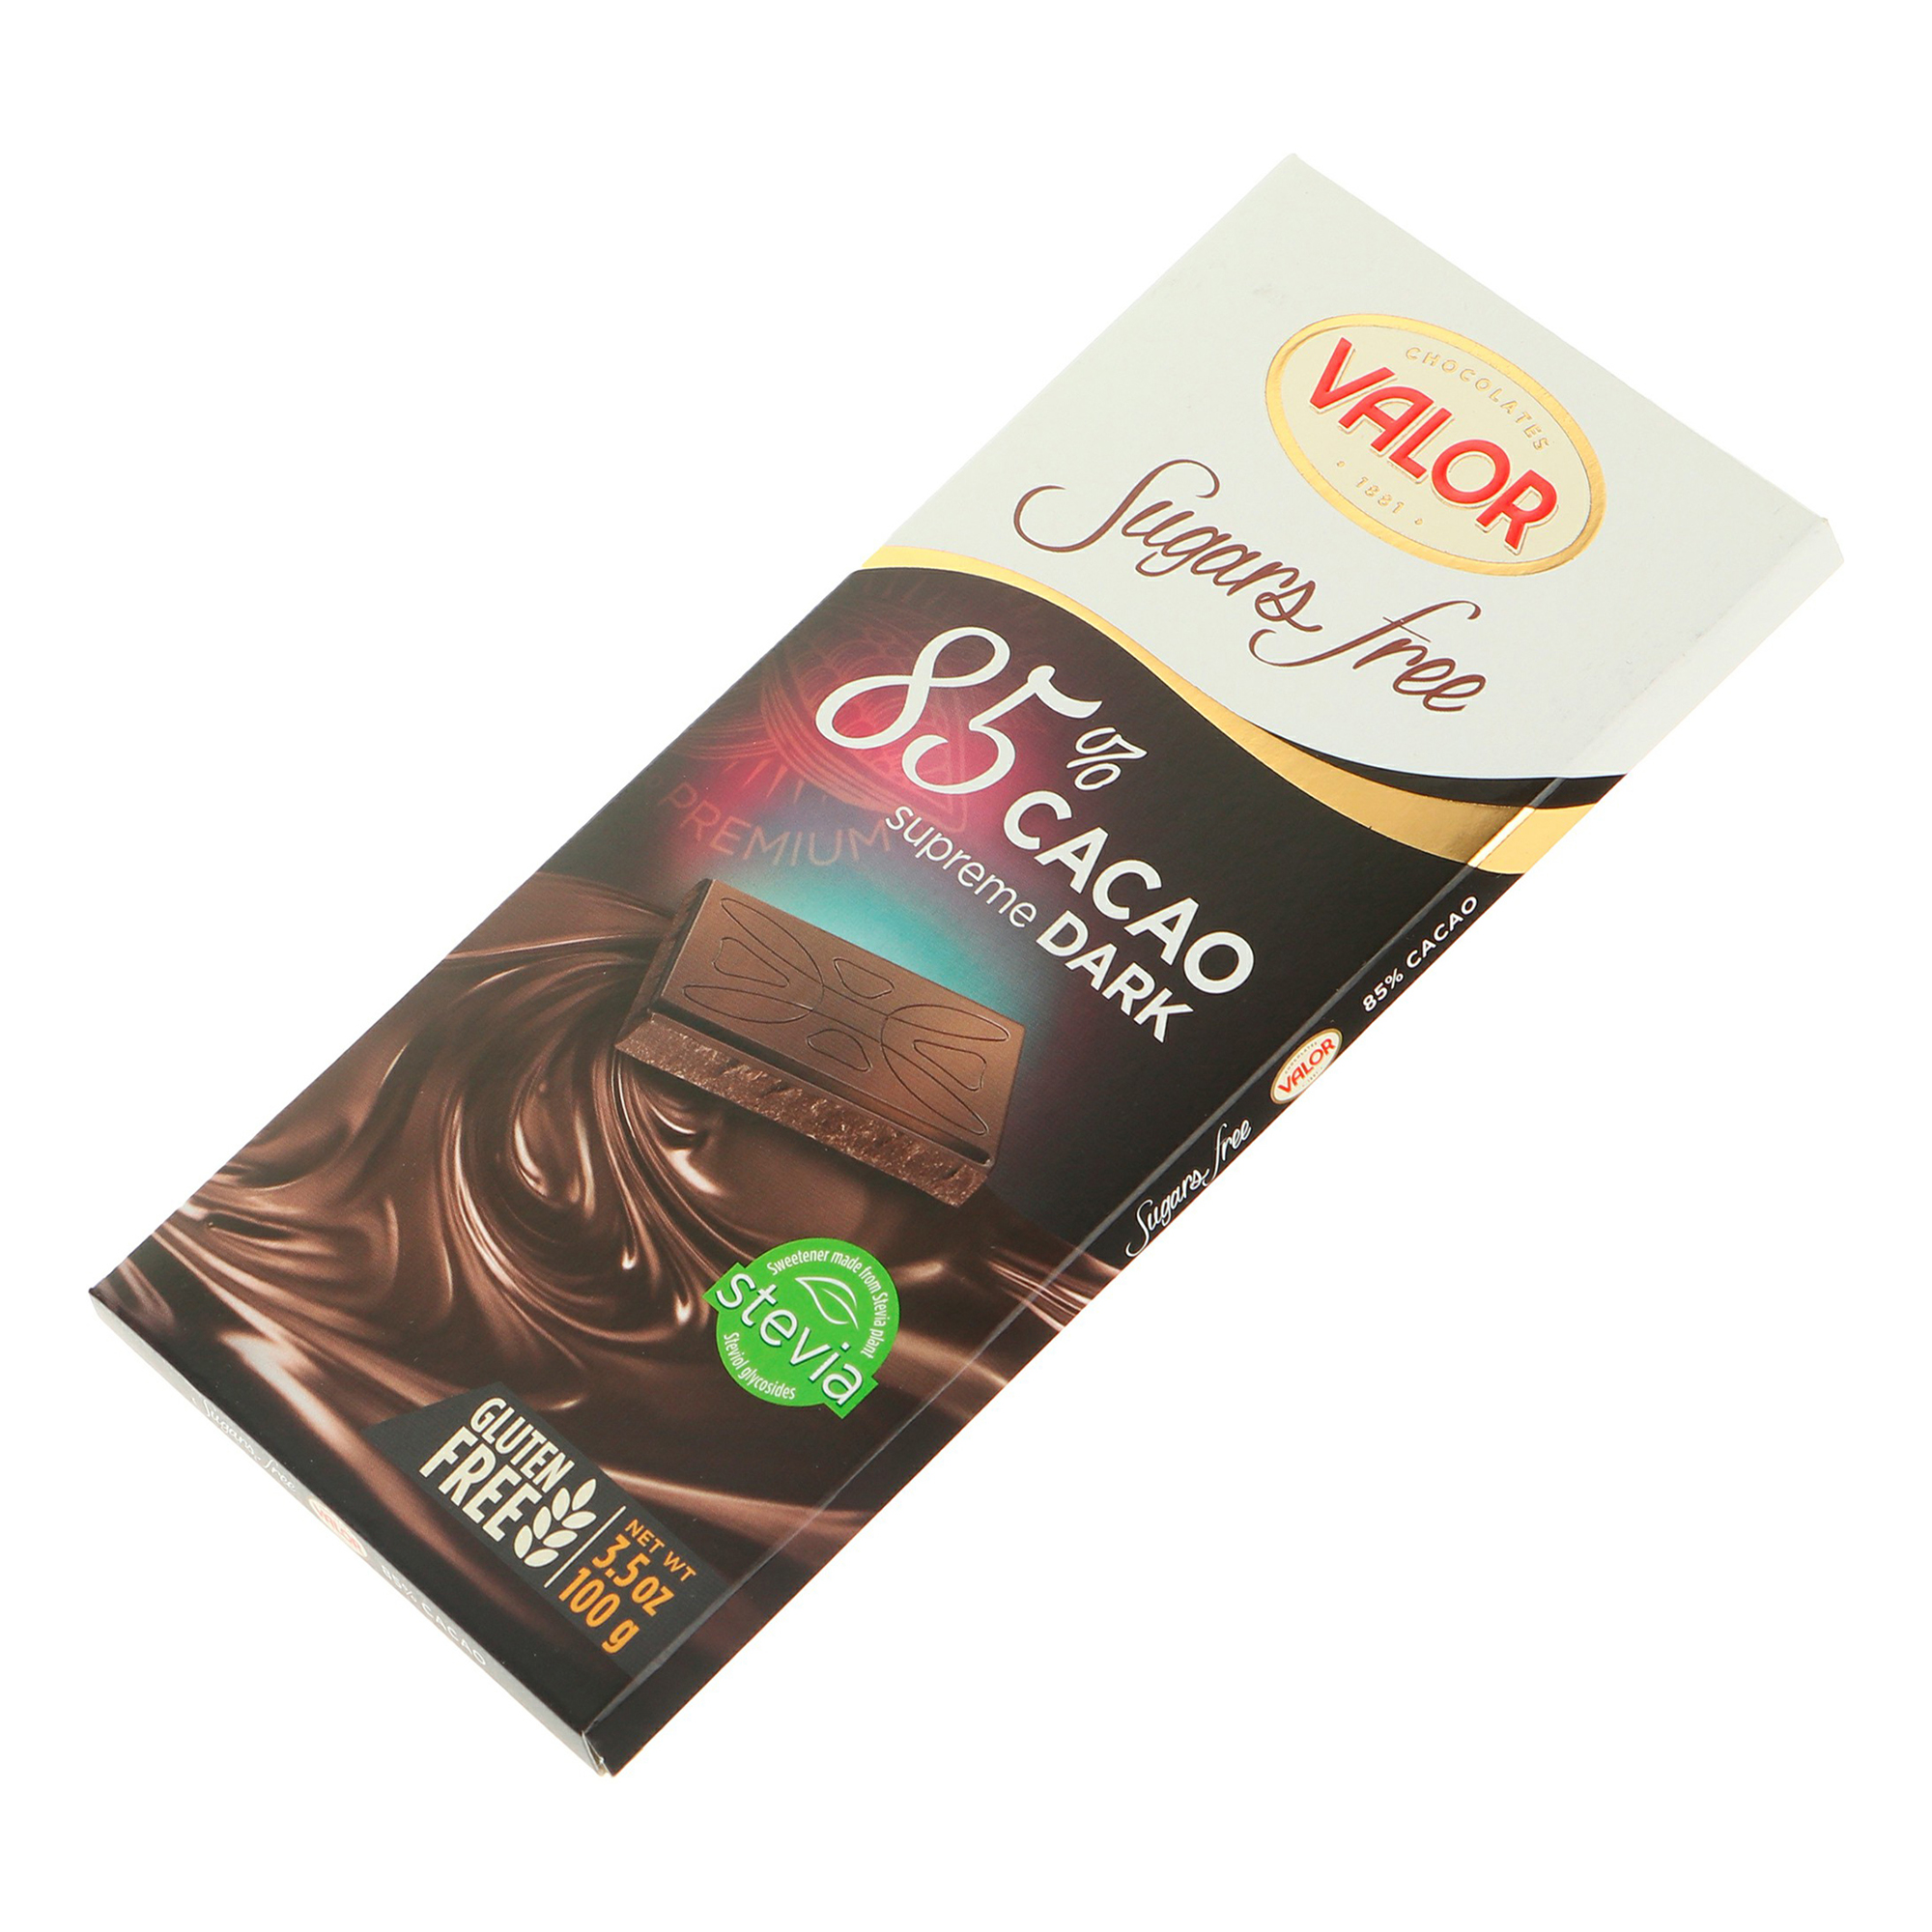 Плитка Valor горький шоколад без сахара 85% 100 г